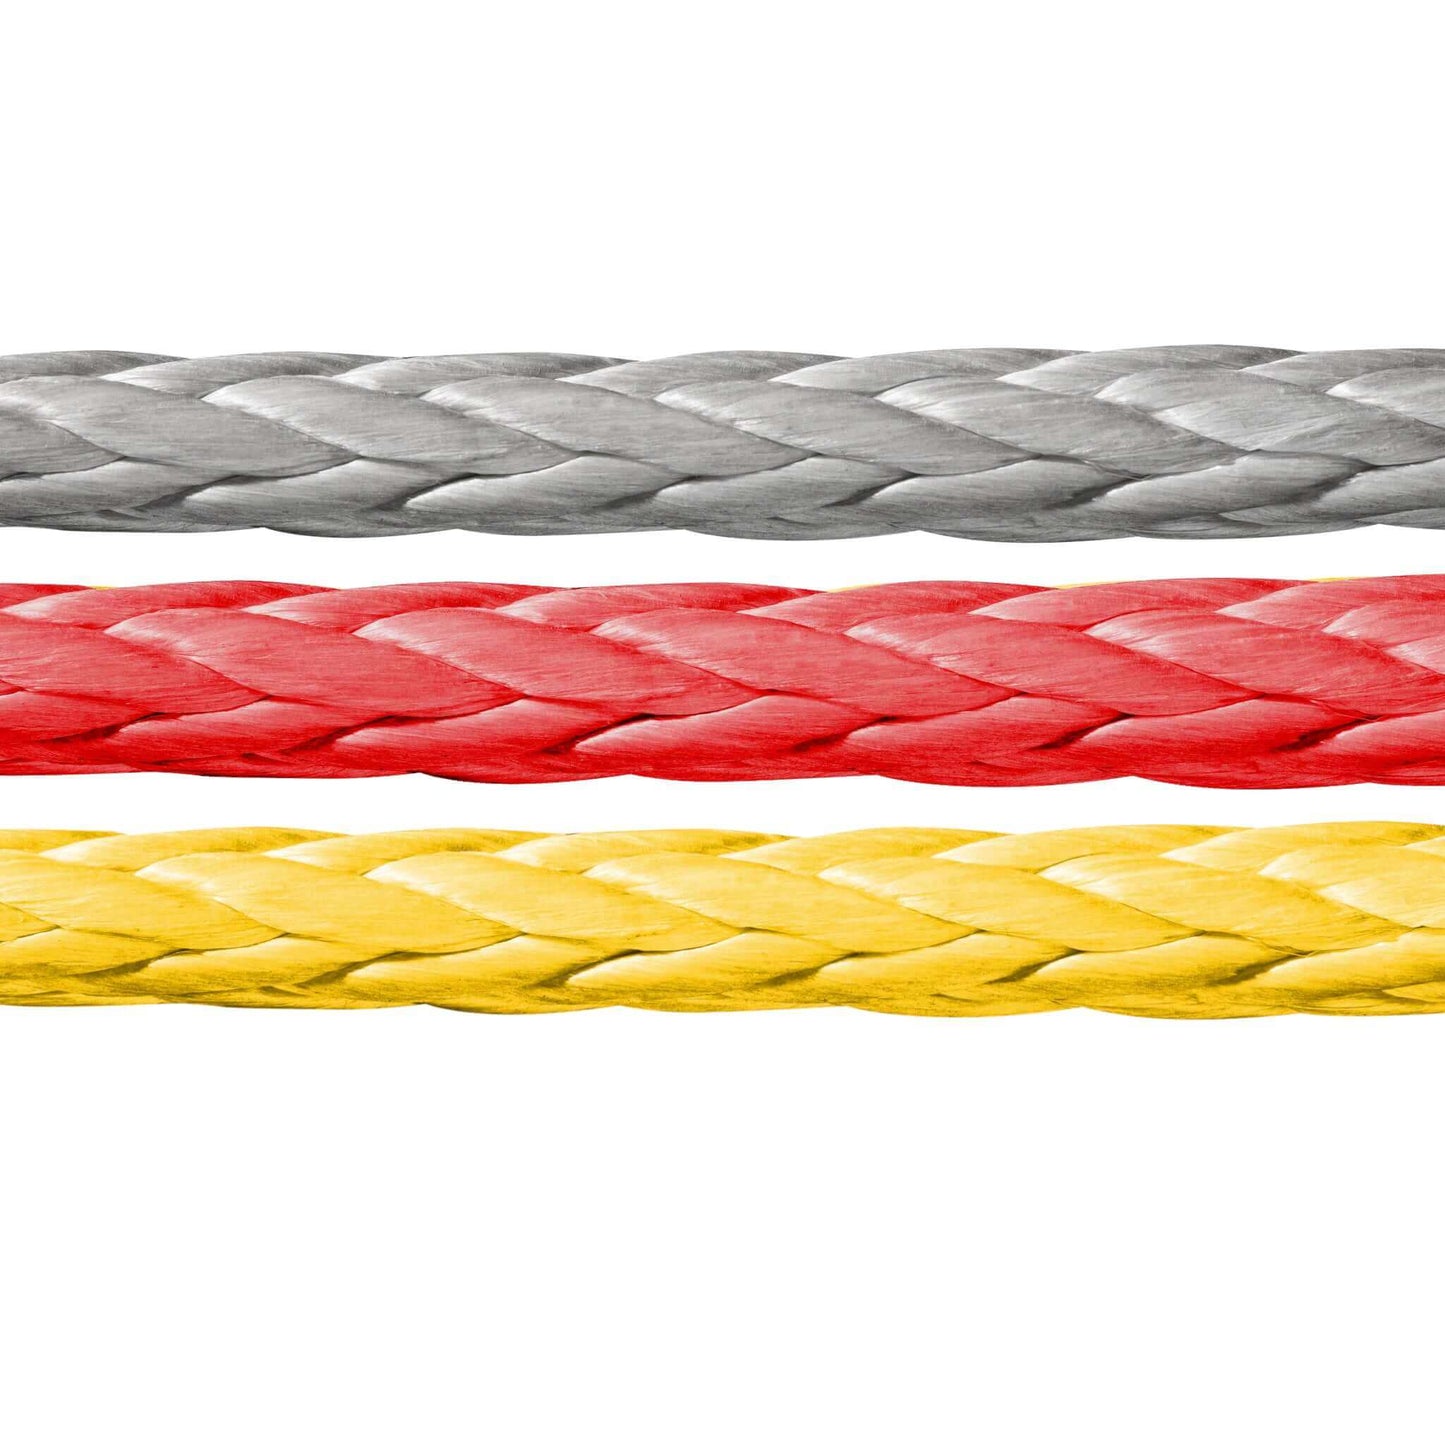 Das vielseitige 12-litzige Novoleen®-Seil von Seilflechter – ideal für Montage, Zug und Abspannung. Hochwertiges Windenseil für unterschiedliche Anwendungen, besonders im Forstbereich. Hohe Qualität, Leistung und Zuverlässigkeit für Ihre Projekte.